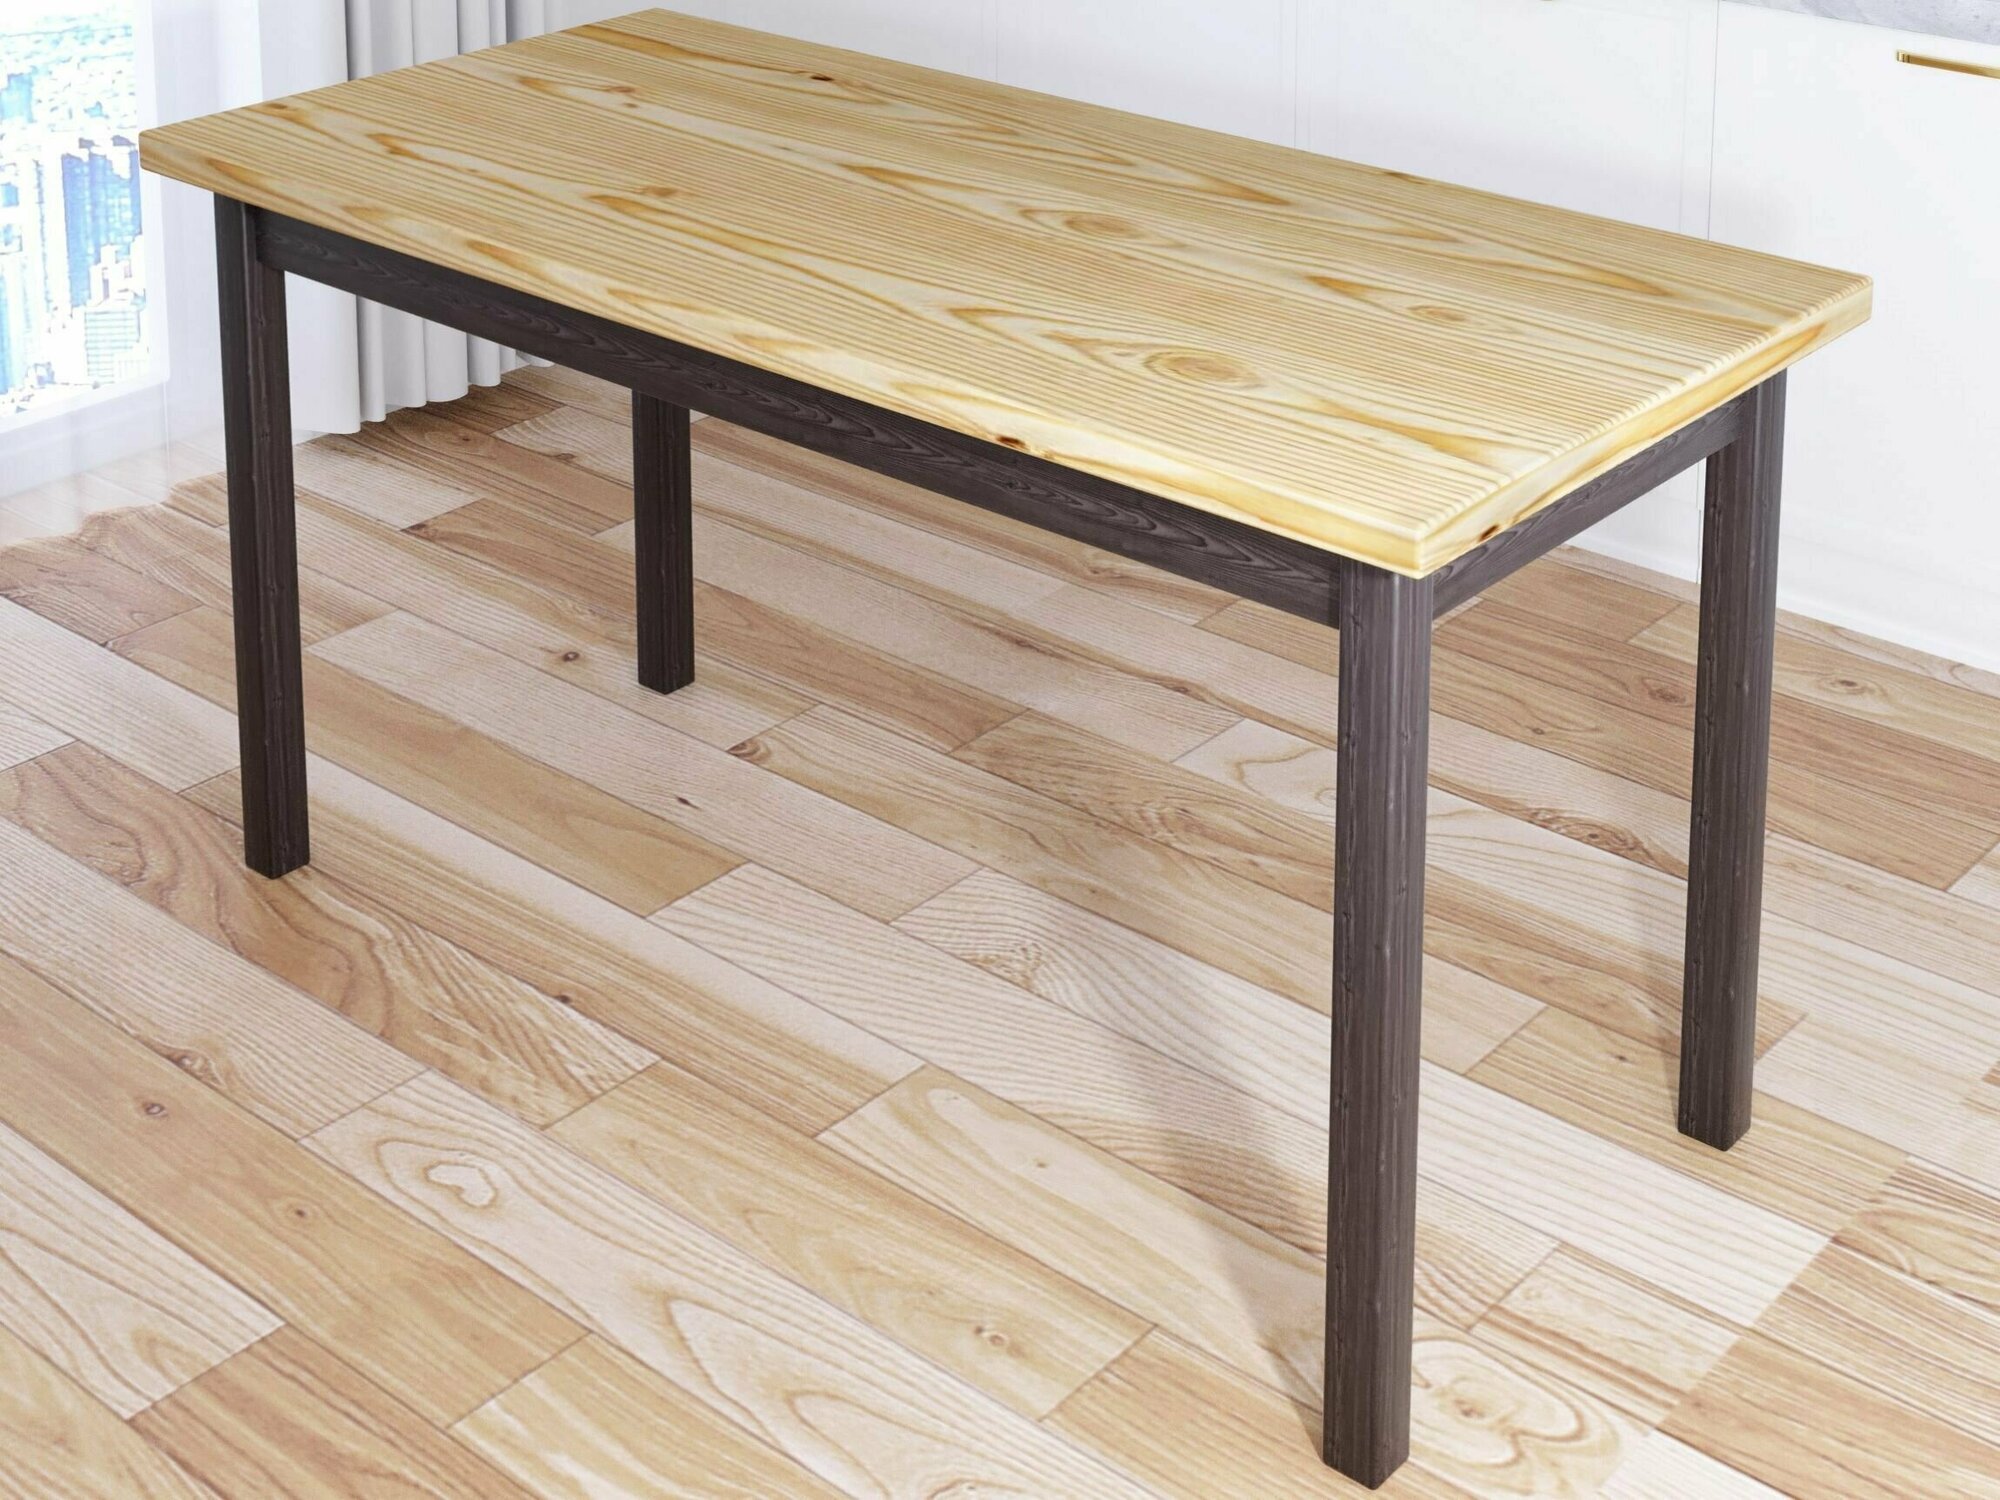 Стол кухонный Классика из массива сосны, лакированная столешница 40 мм и ножки цвета венге, 140х70х75 см